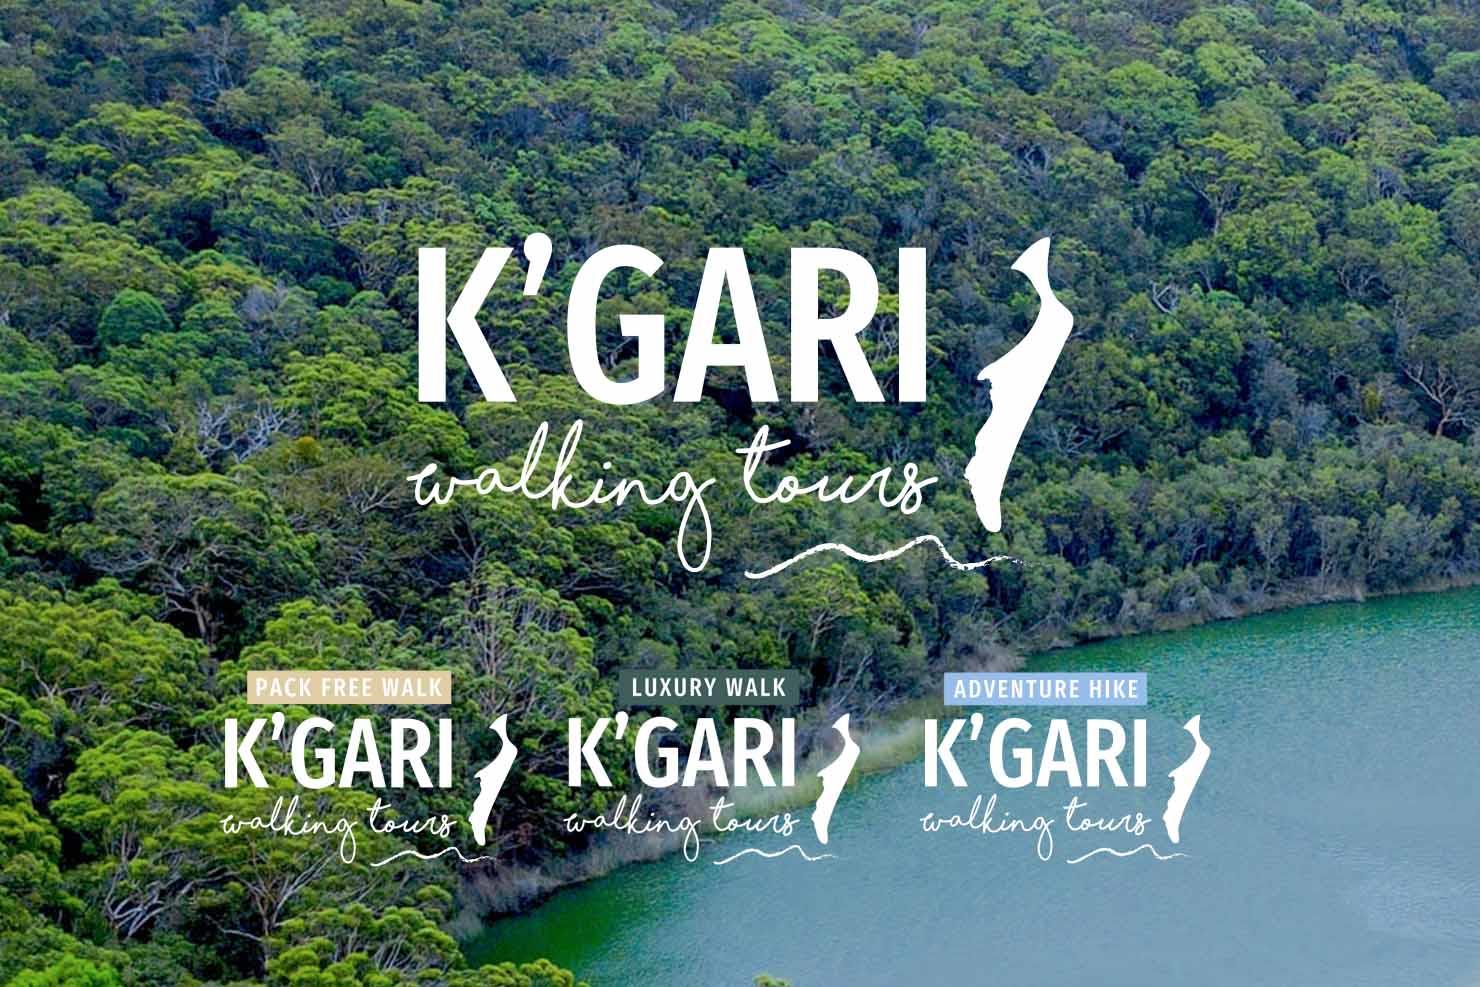 K'gari Walking Tours branding